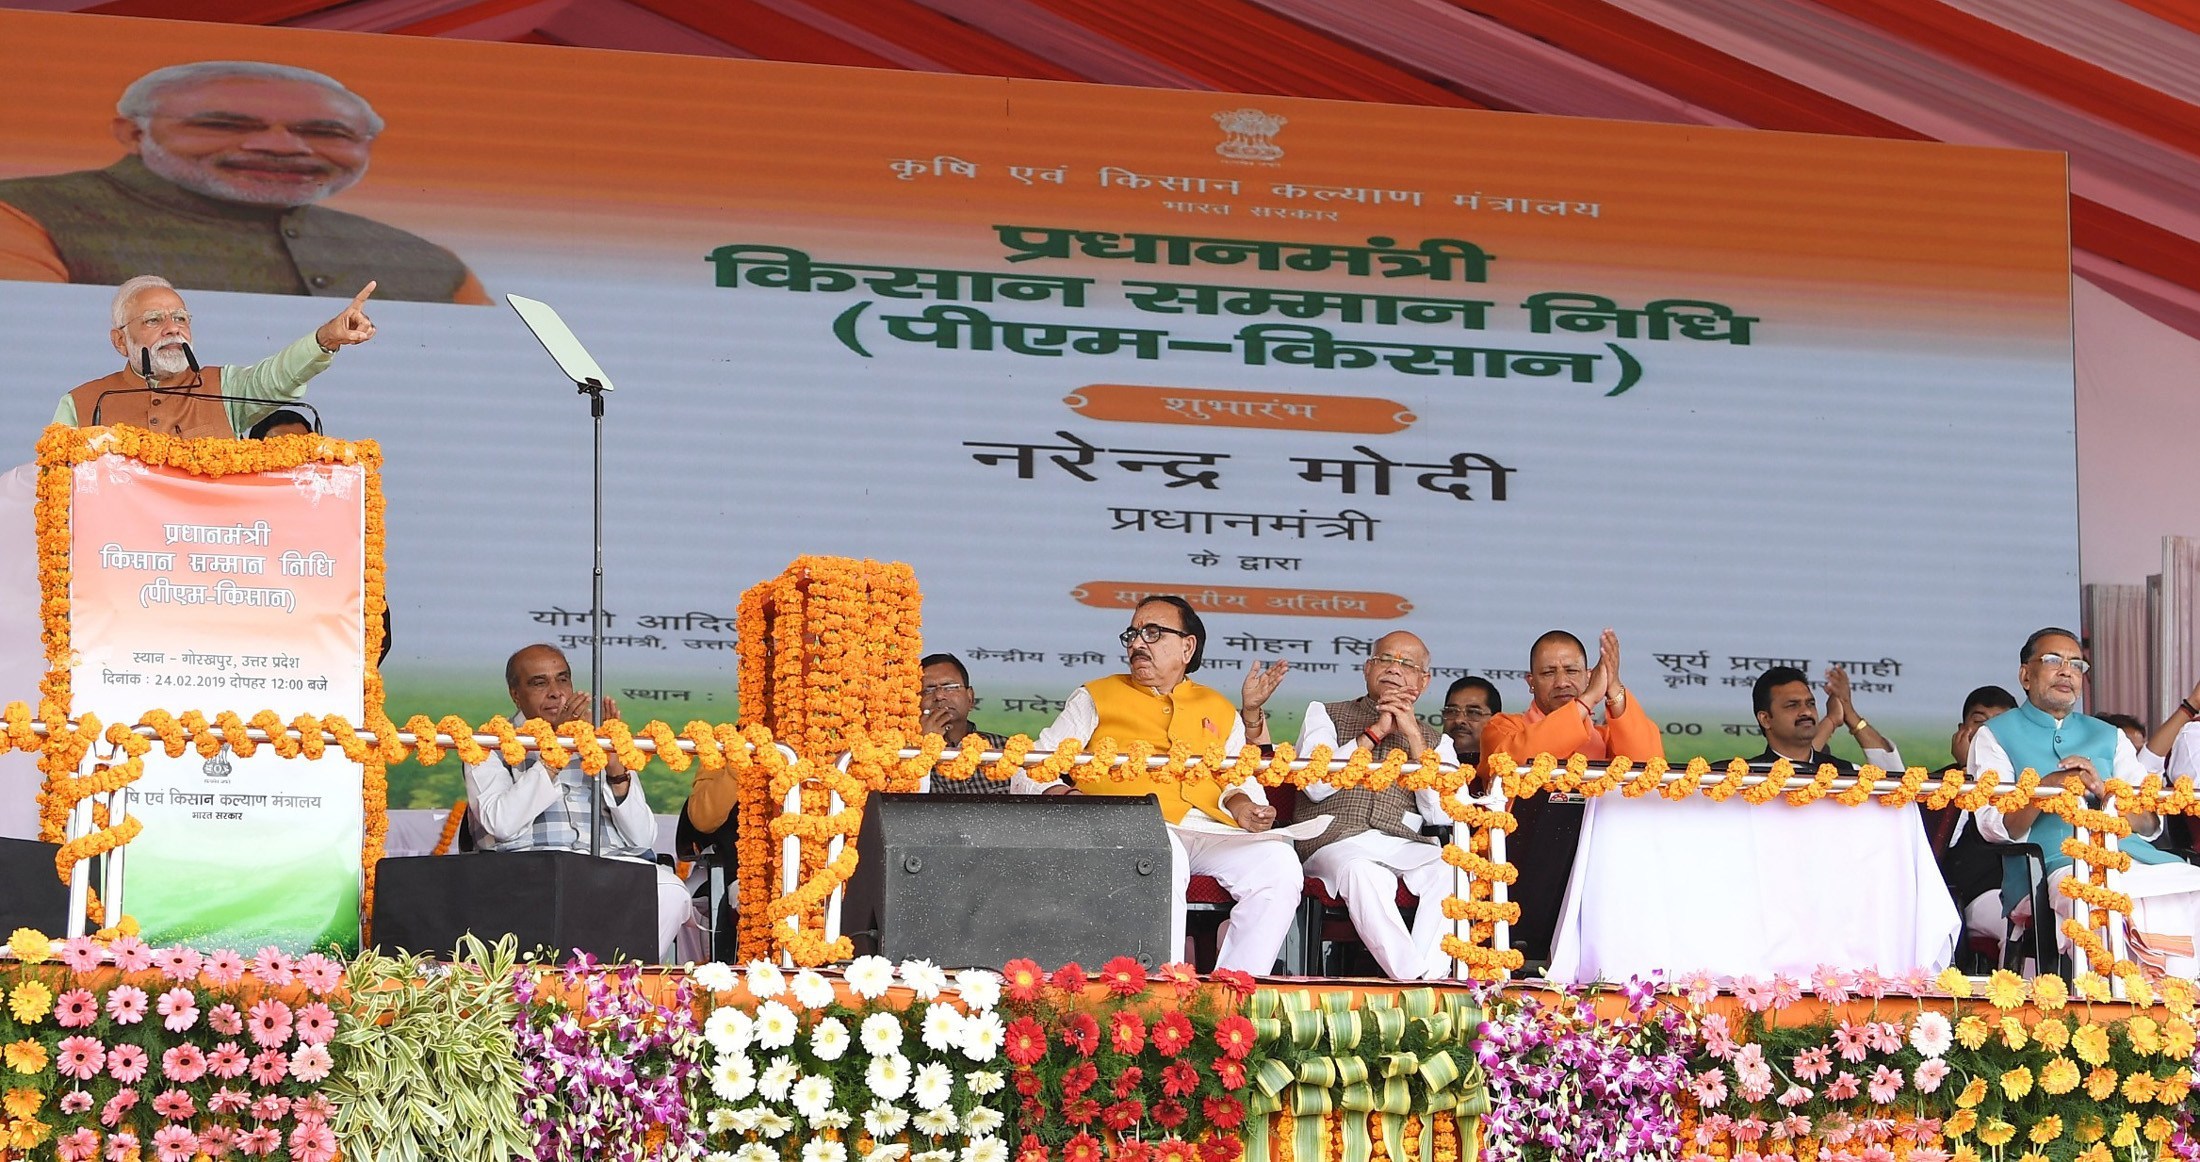 उत्तर प्रदेश के गोरखपुर में 24 फरवरी 2019 को पीएम-किसान योजना को लॉन्च करते प्रधानमंत्री नरेंद्र मोदी. (फोटो साभार: पीआईबी)